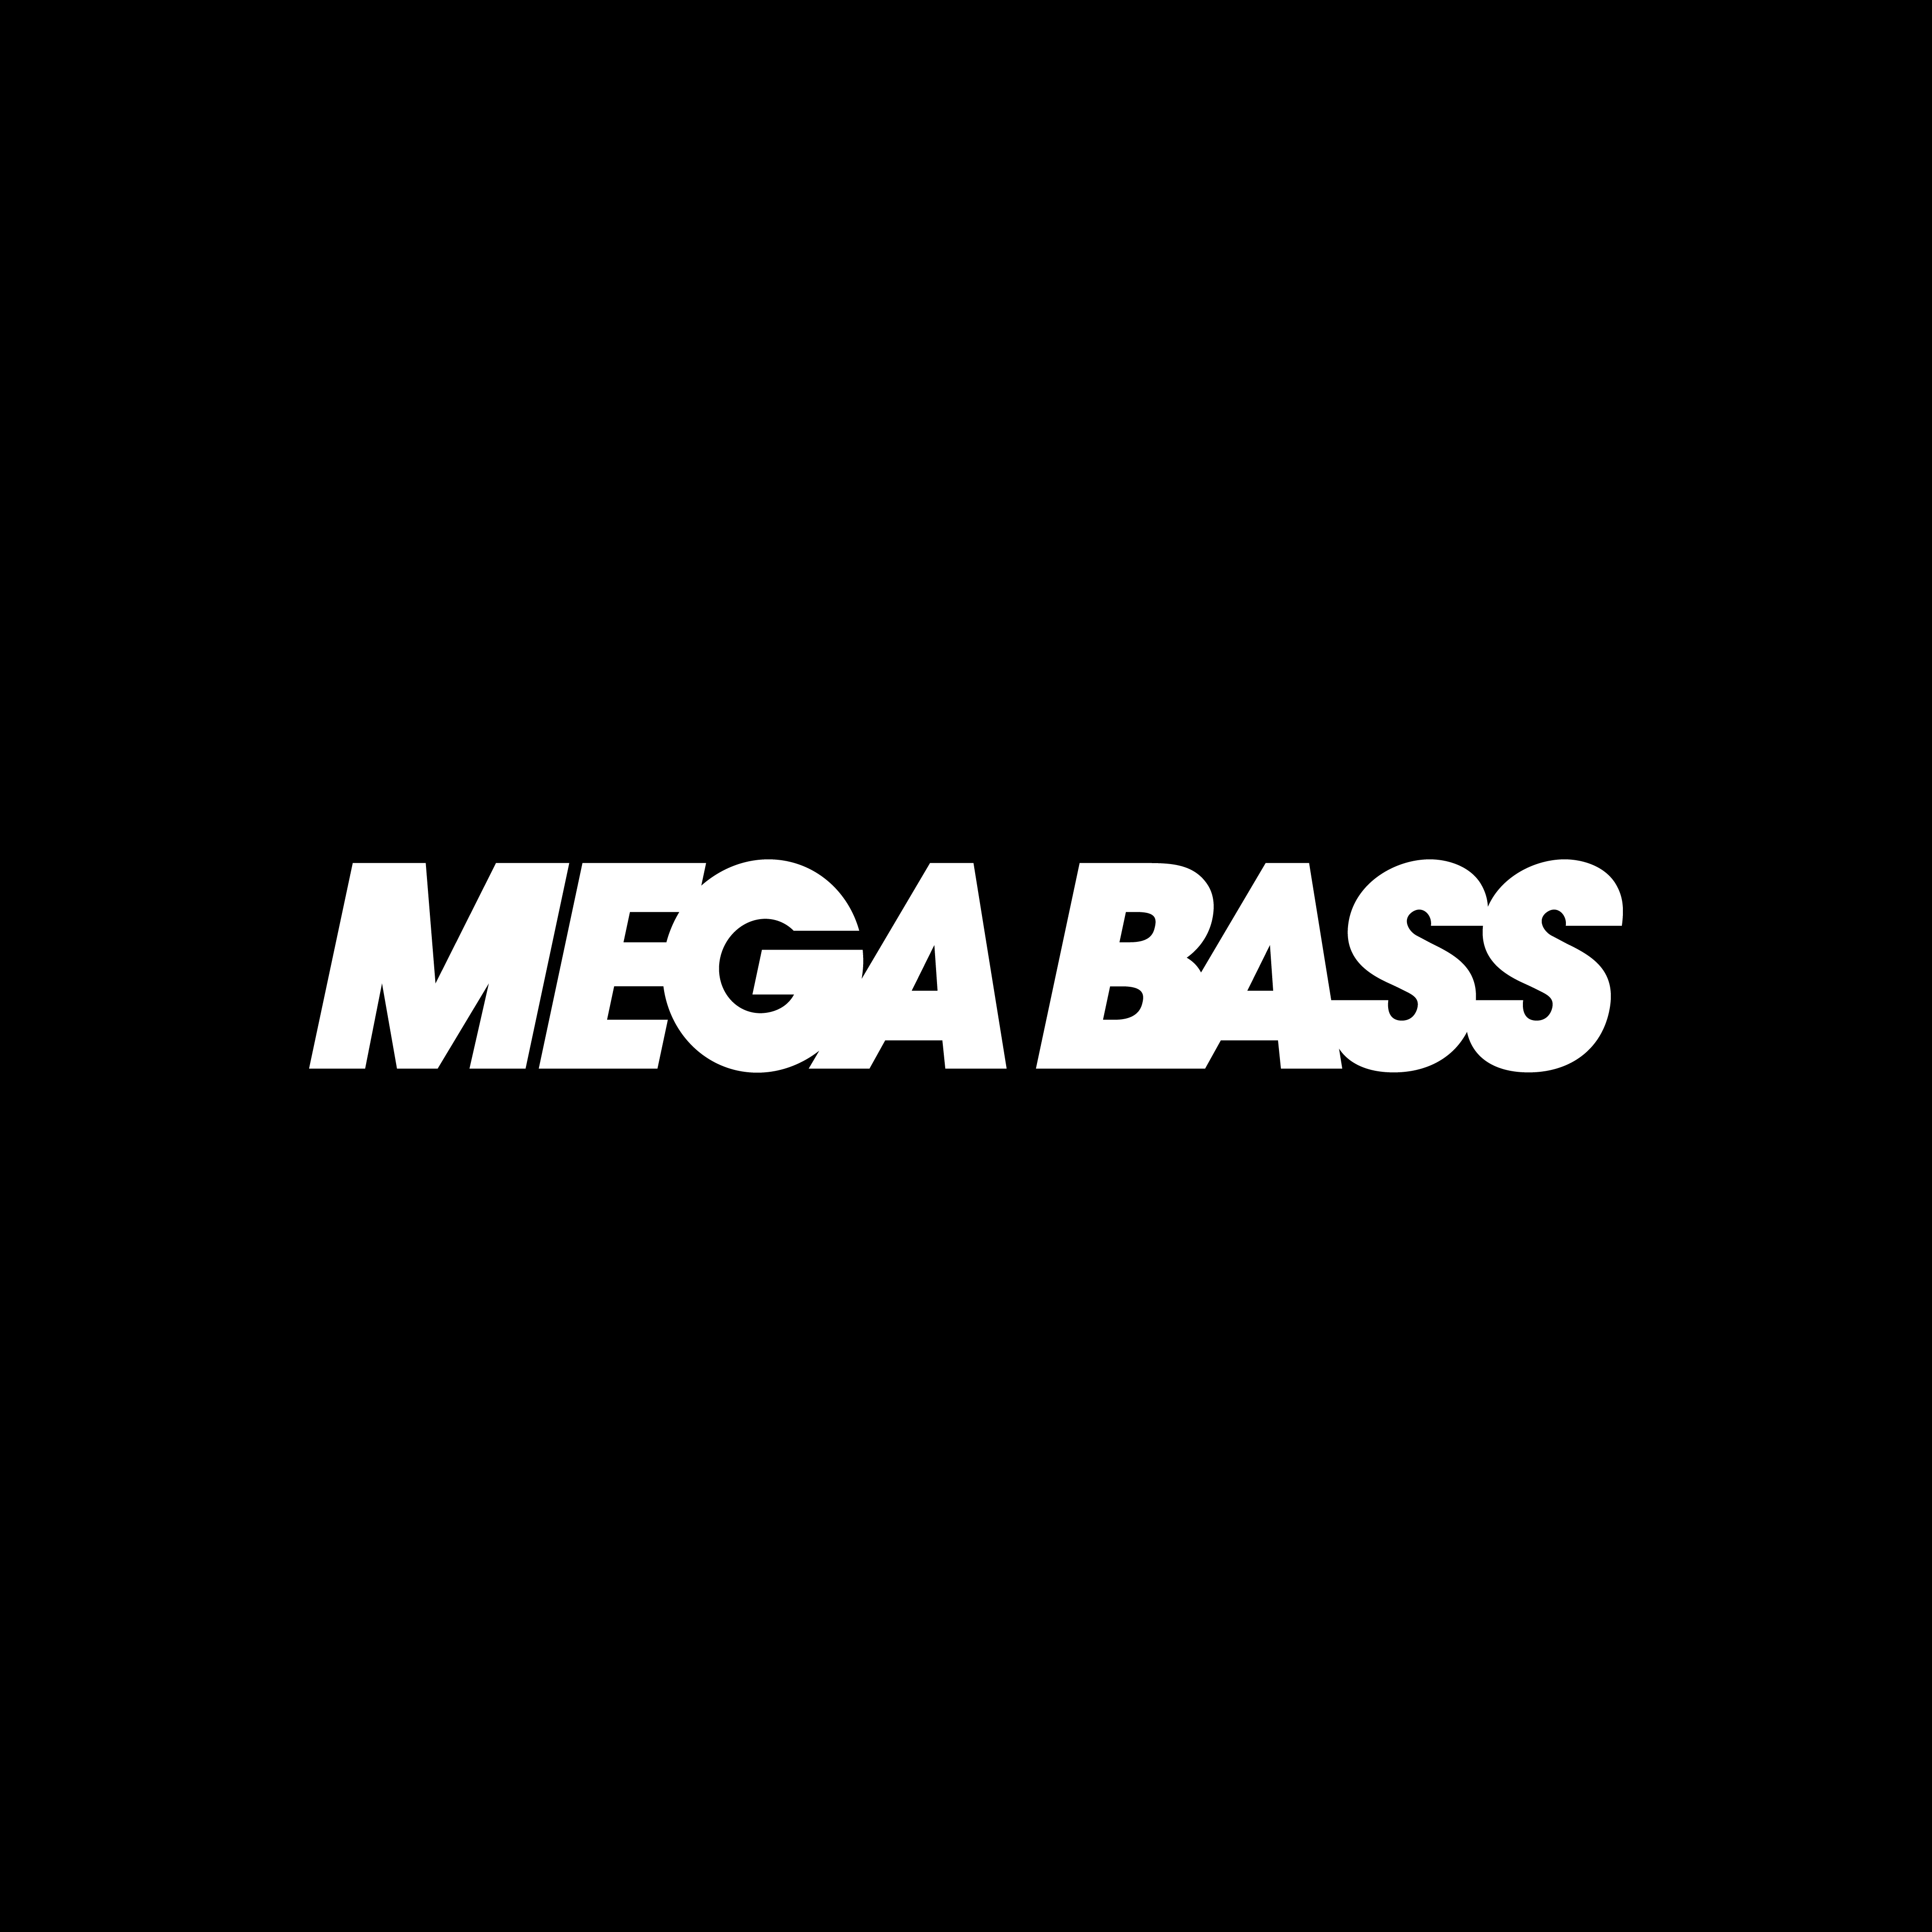 sonylogos on X: Mega Bass (1988) #sony #design #logo #logodesign  #logoinspiration #branding #megabass  / X